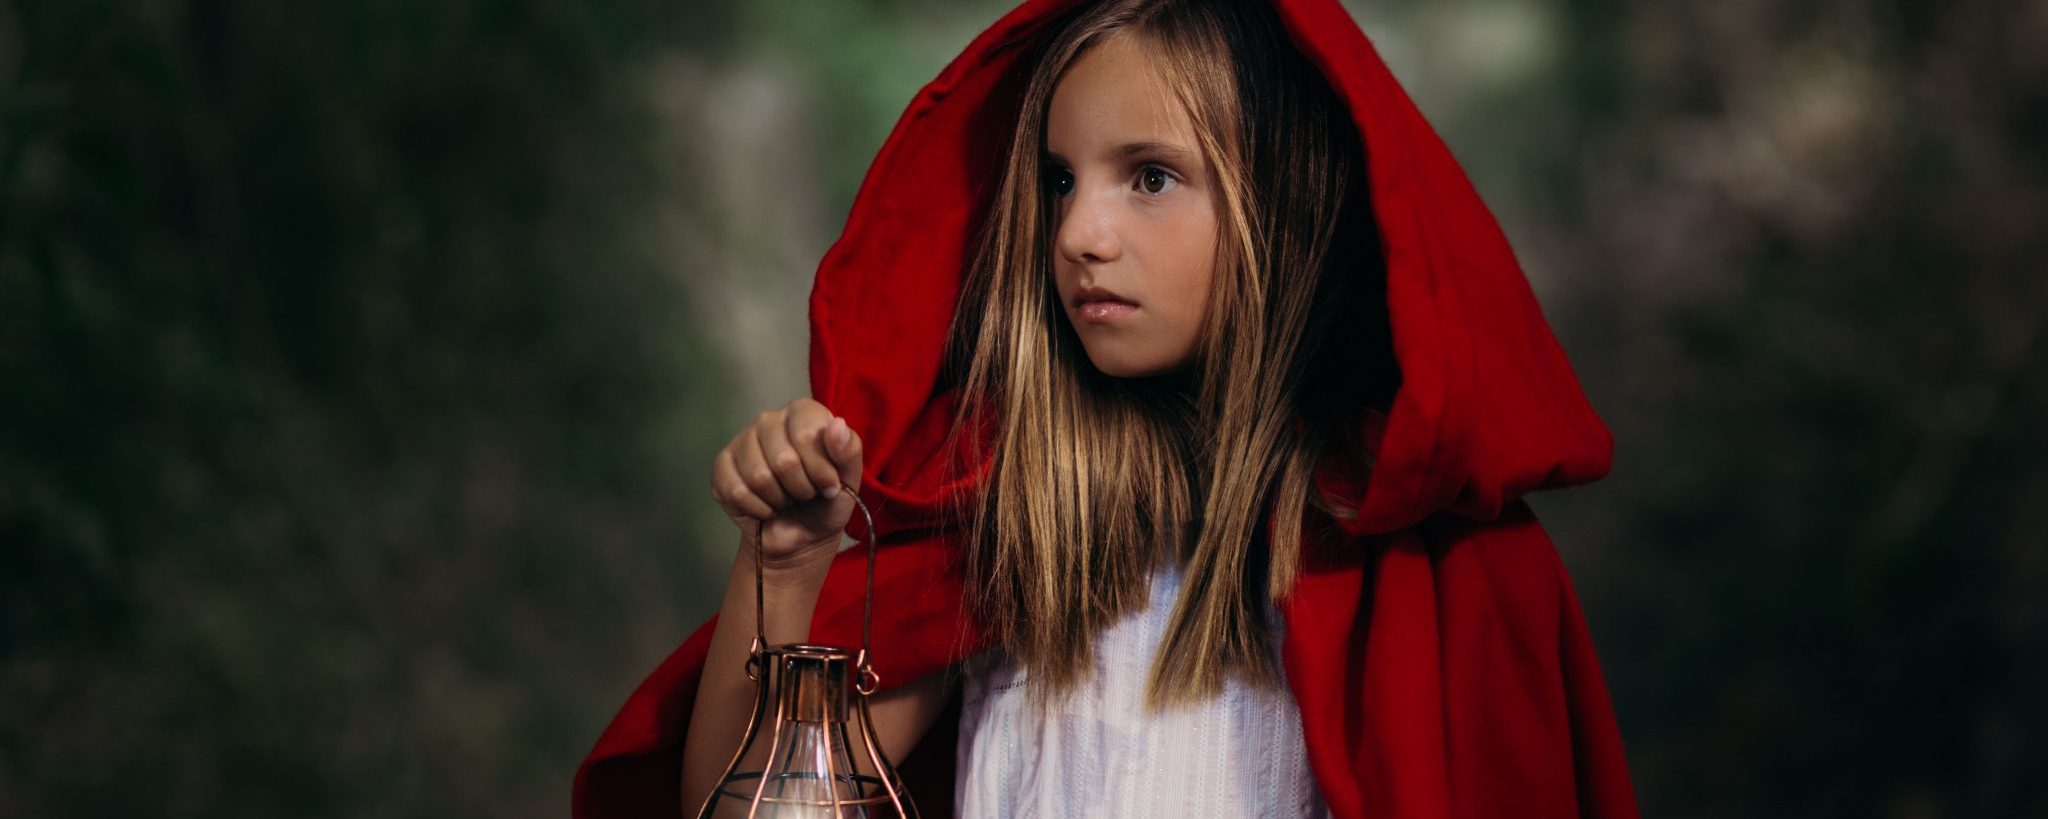 Caperucita little Red Riding Hood